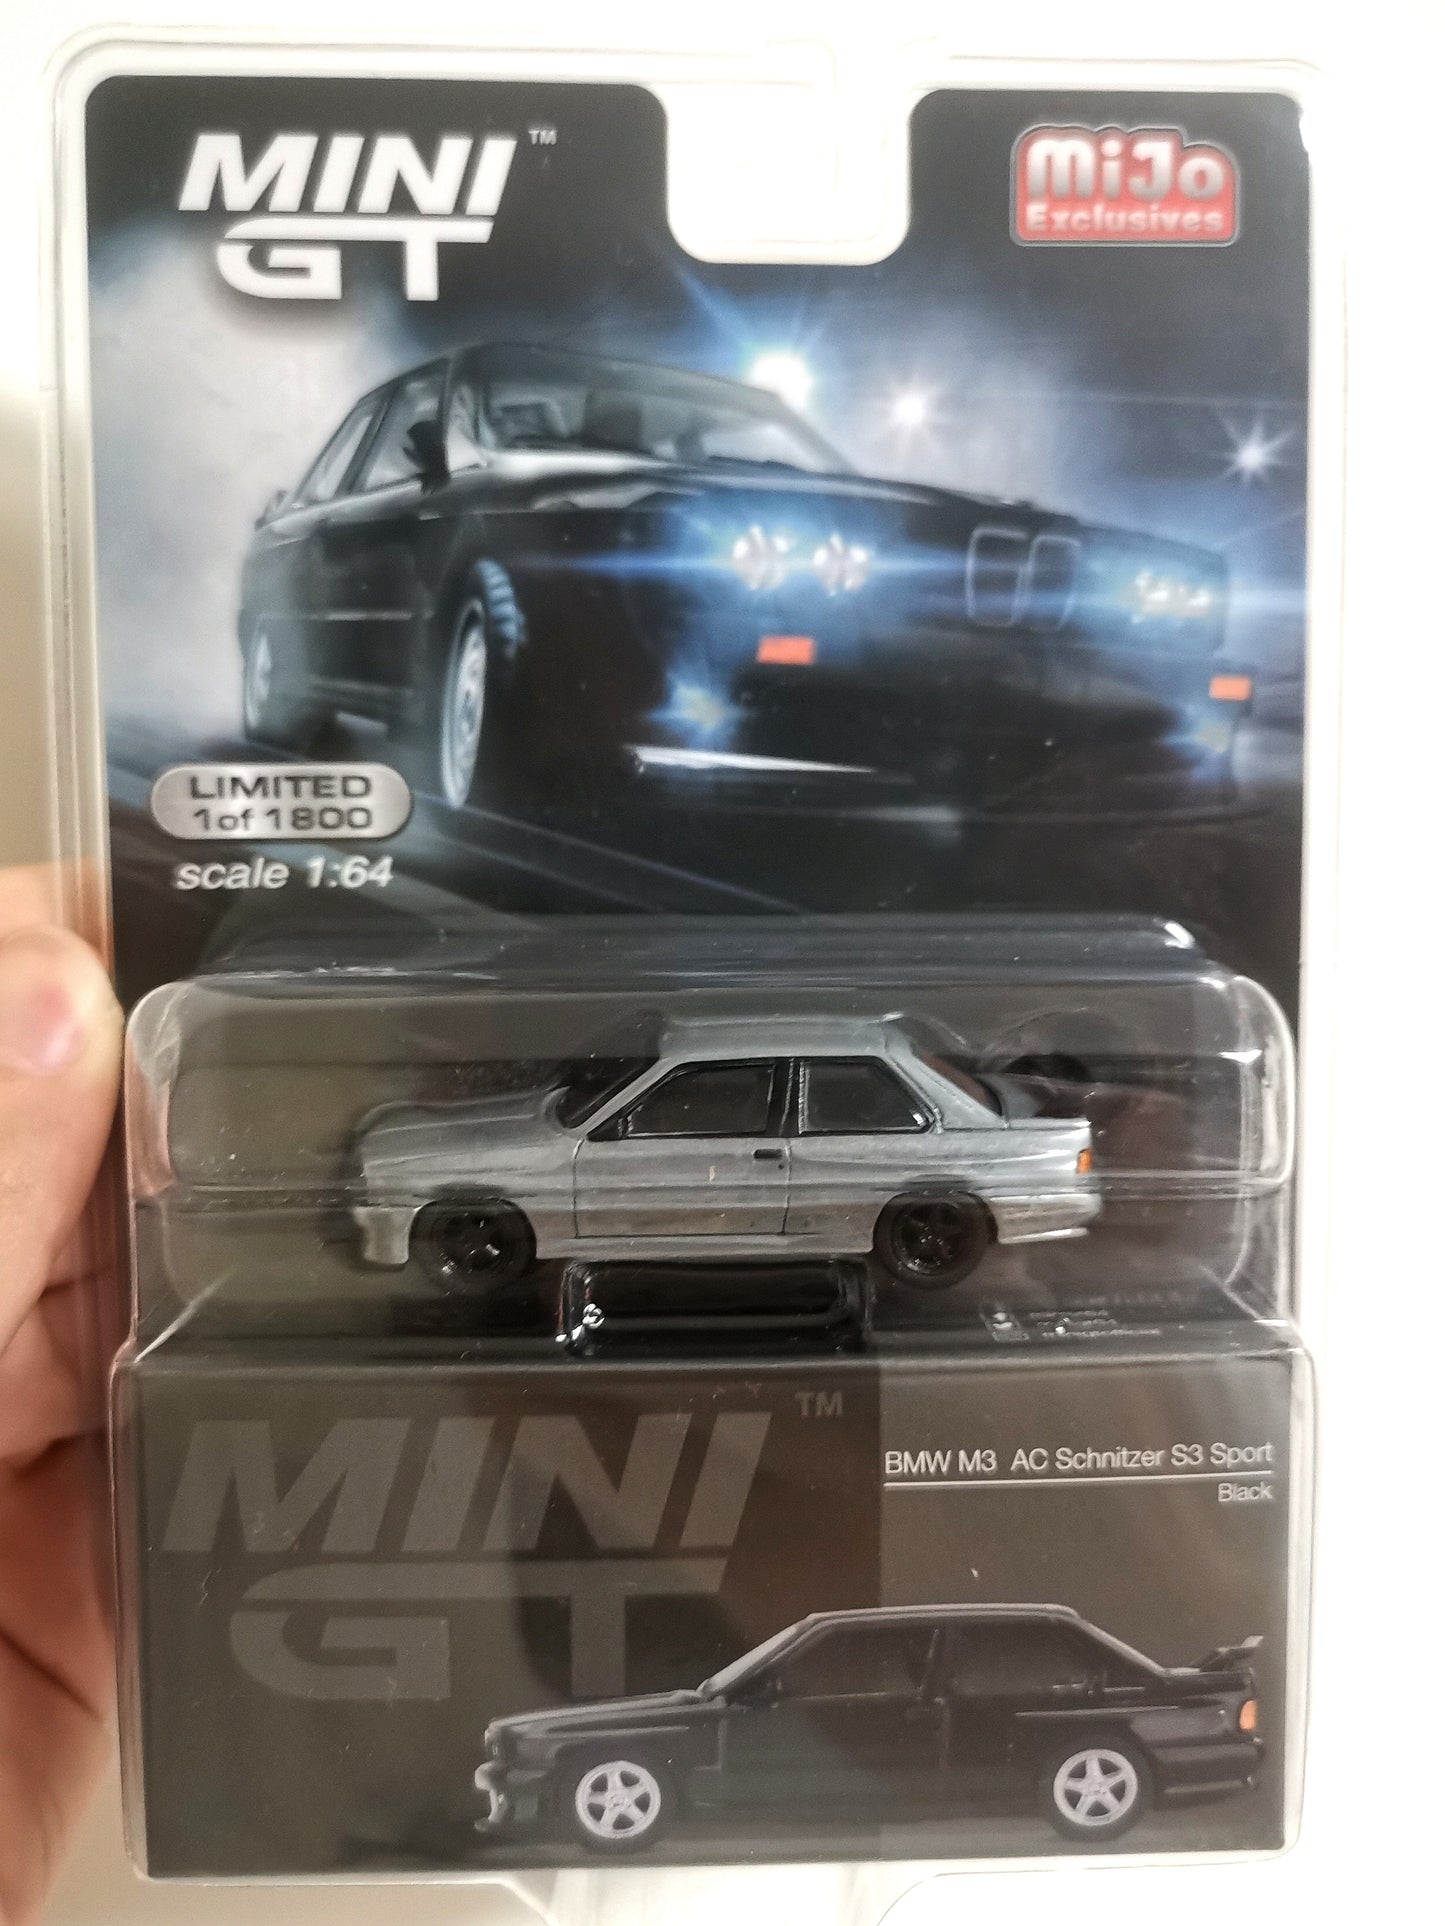 Mini GT x Mijo BMW M3 e30 AC Schnitzer S3 Sport 1:64 scale